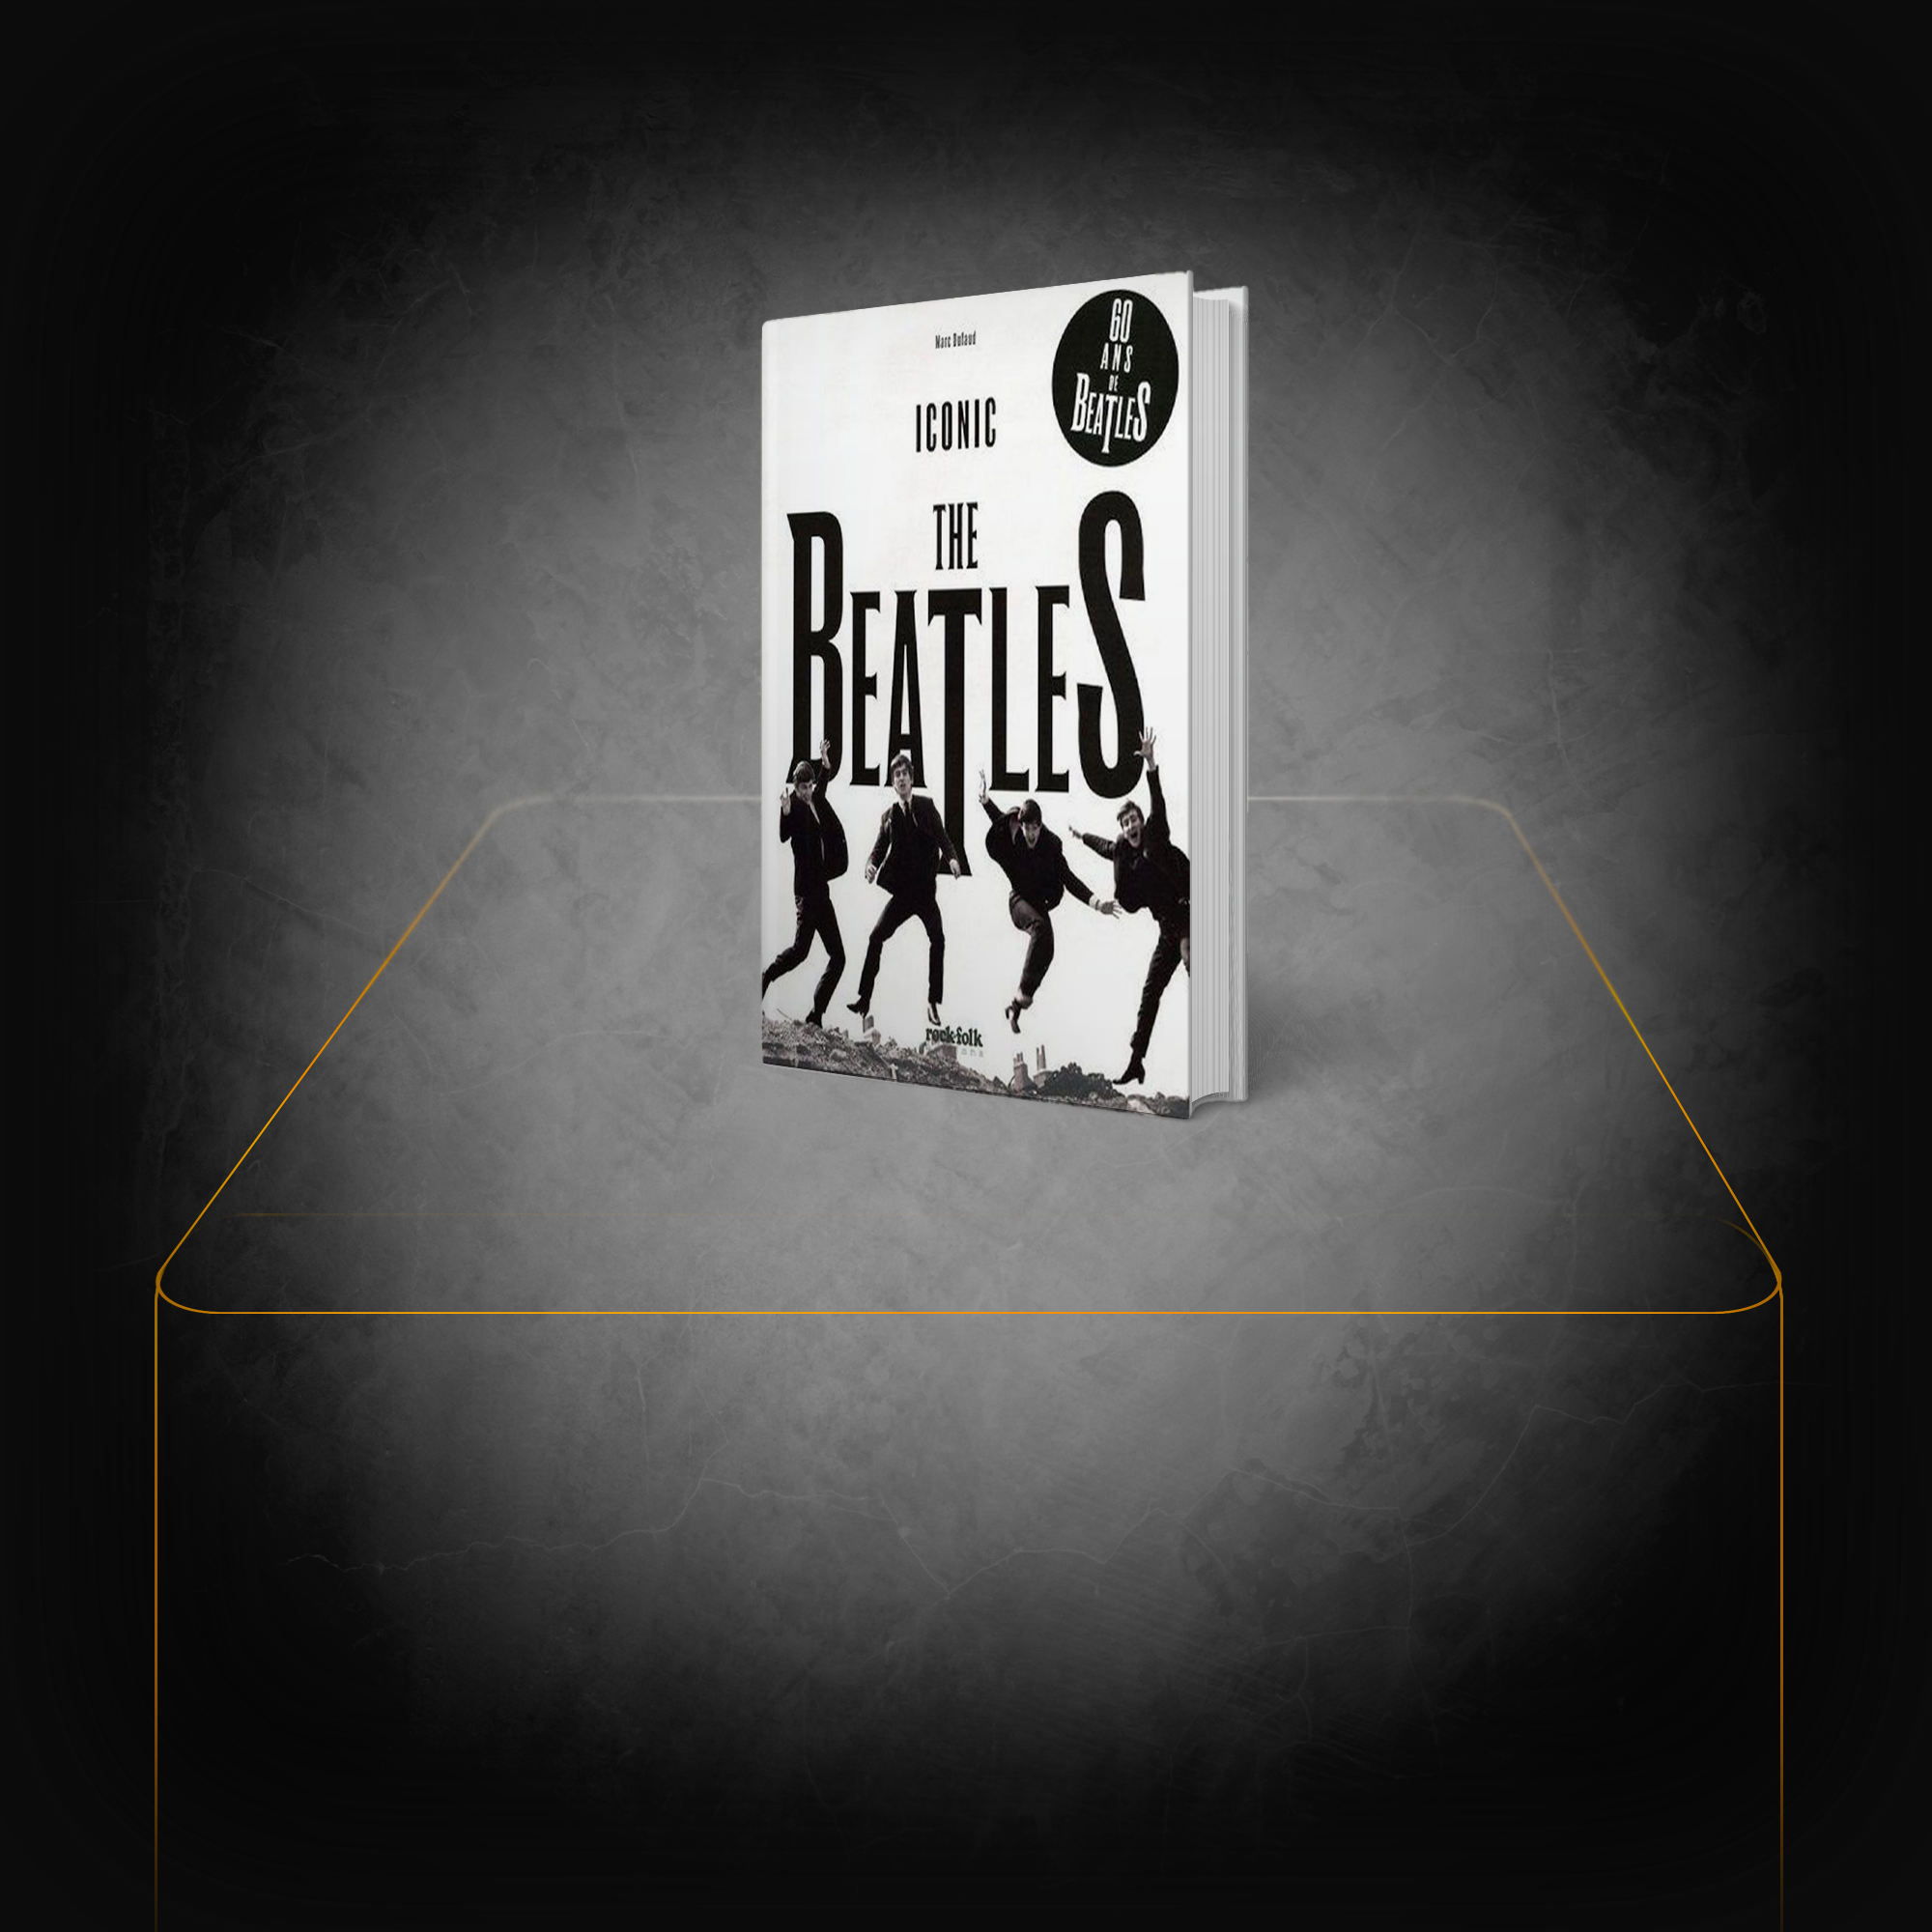 Livre Iconic : 60 ans de Beatles - The Beatles